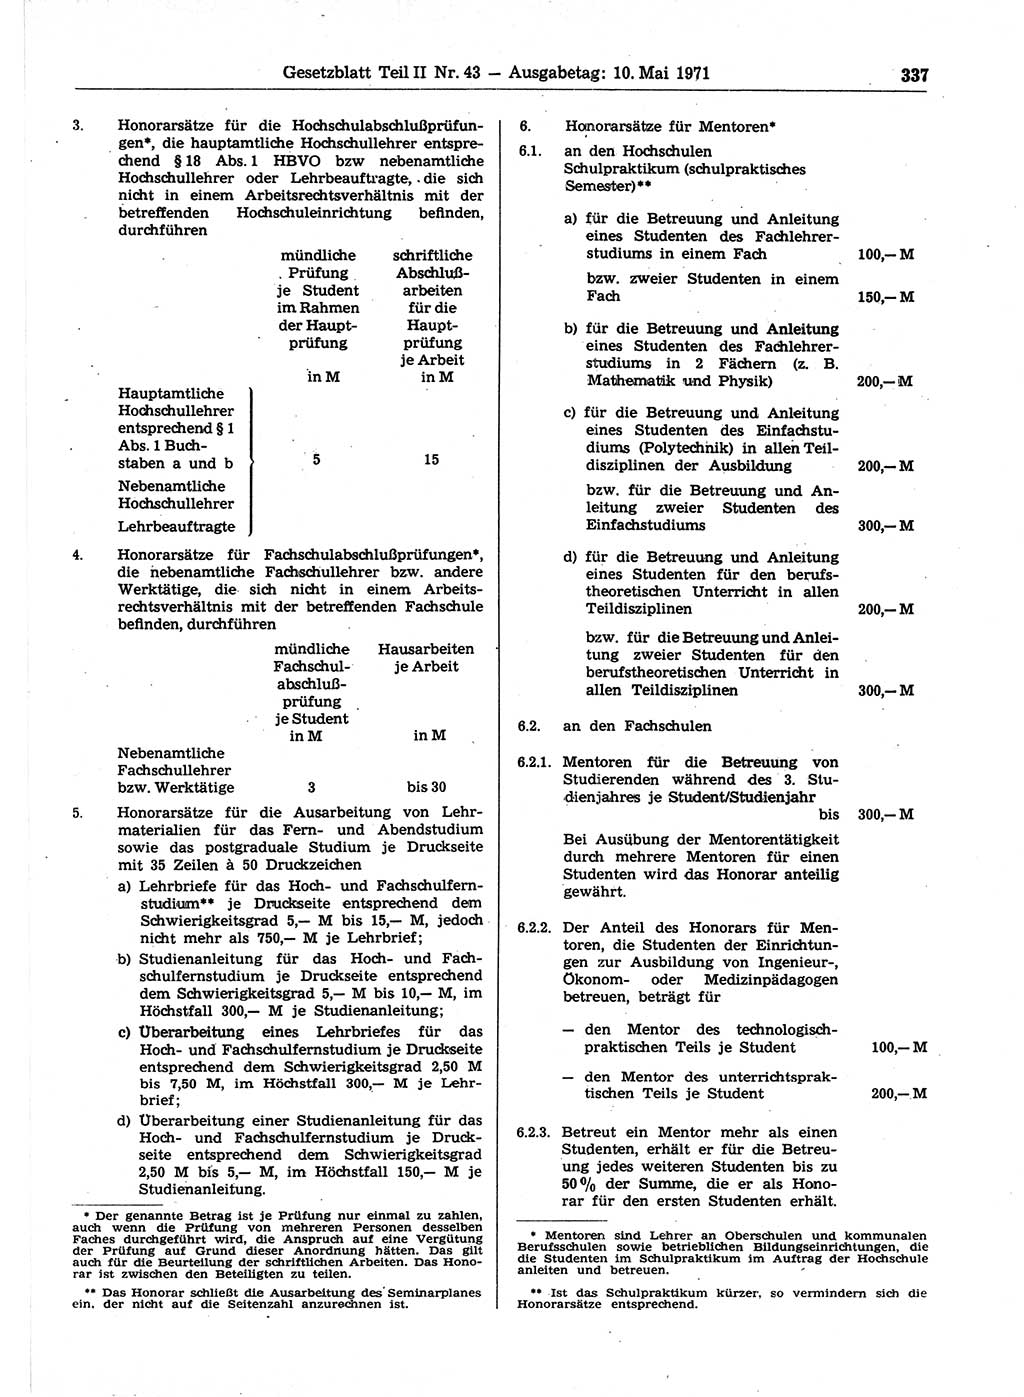 Gesetzblatt (GBl.) der Deutschen Demokratischen Republik (DDR) Teil ⅠⅠ 1971, Seite 337 (GBl. DDR ⅠⅠ 1971, S. 337)